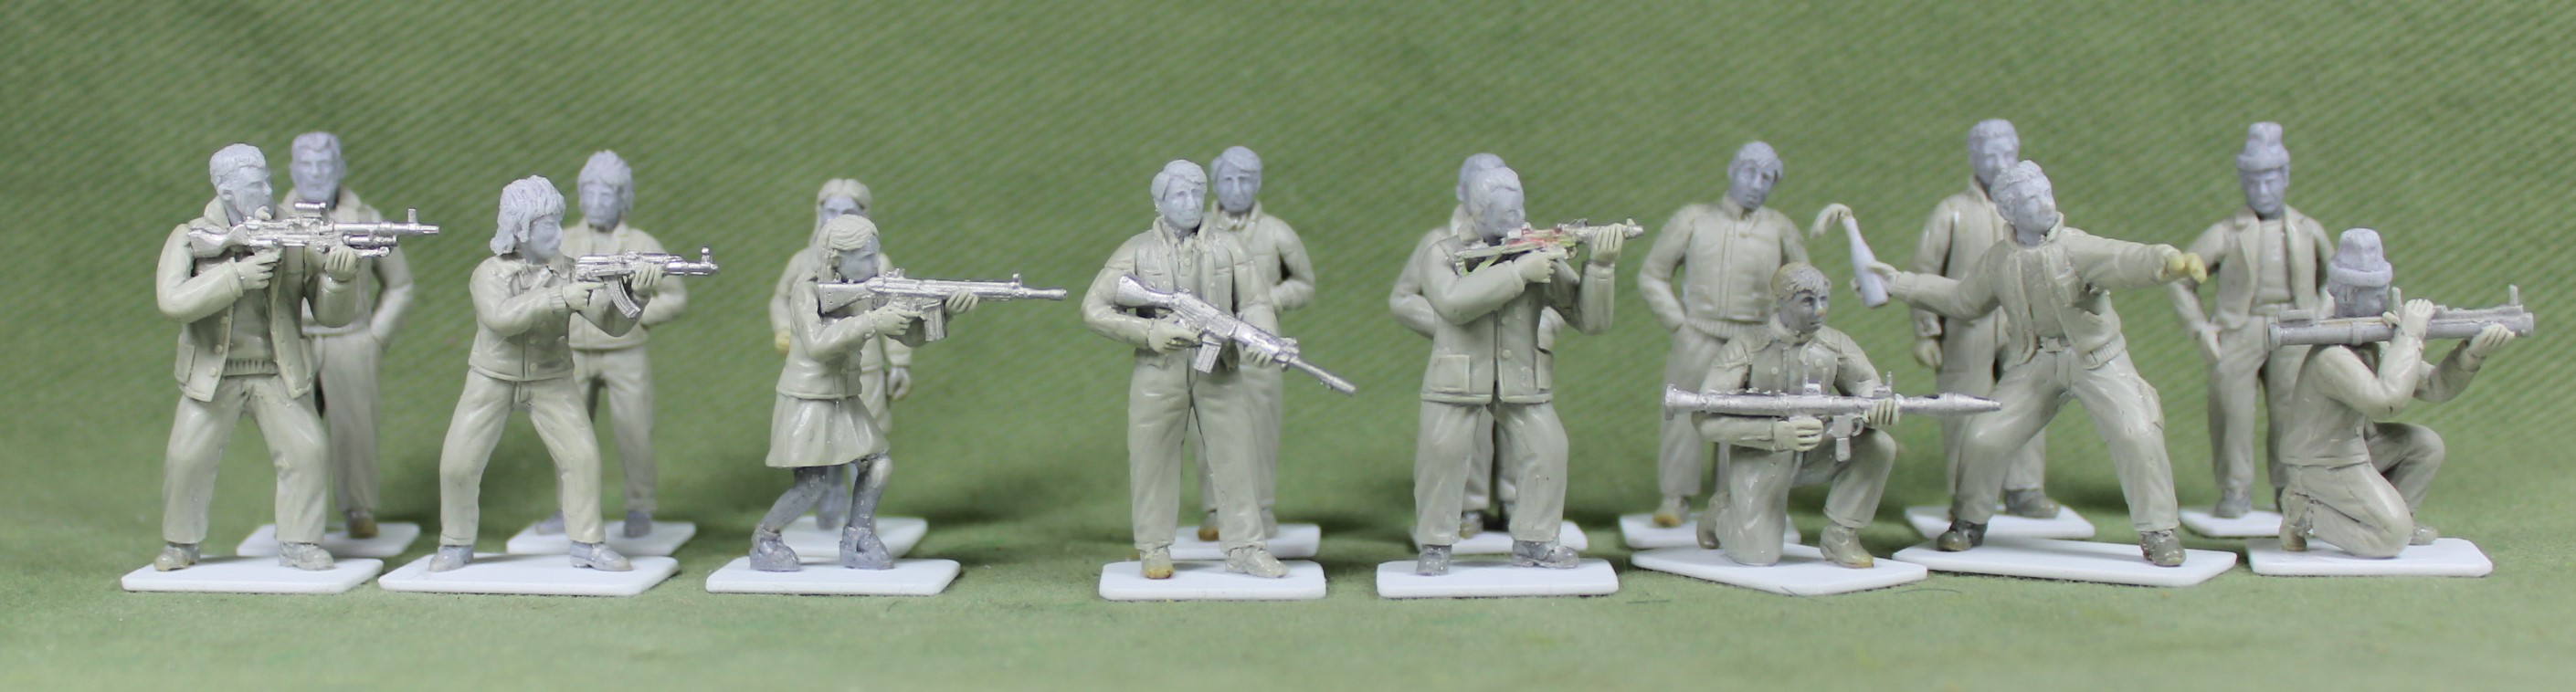 28mm Modern Civilians Armed - Empress Miniatures